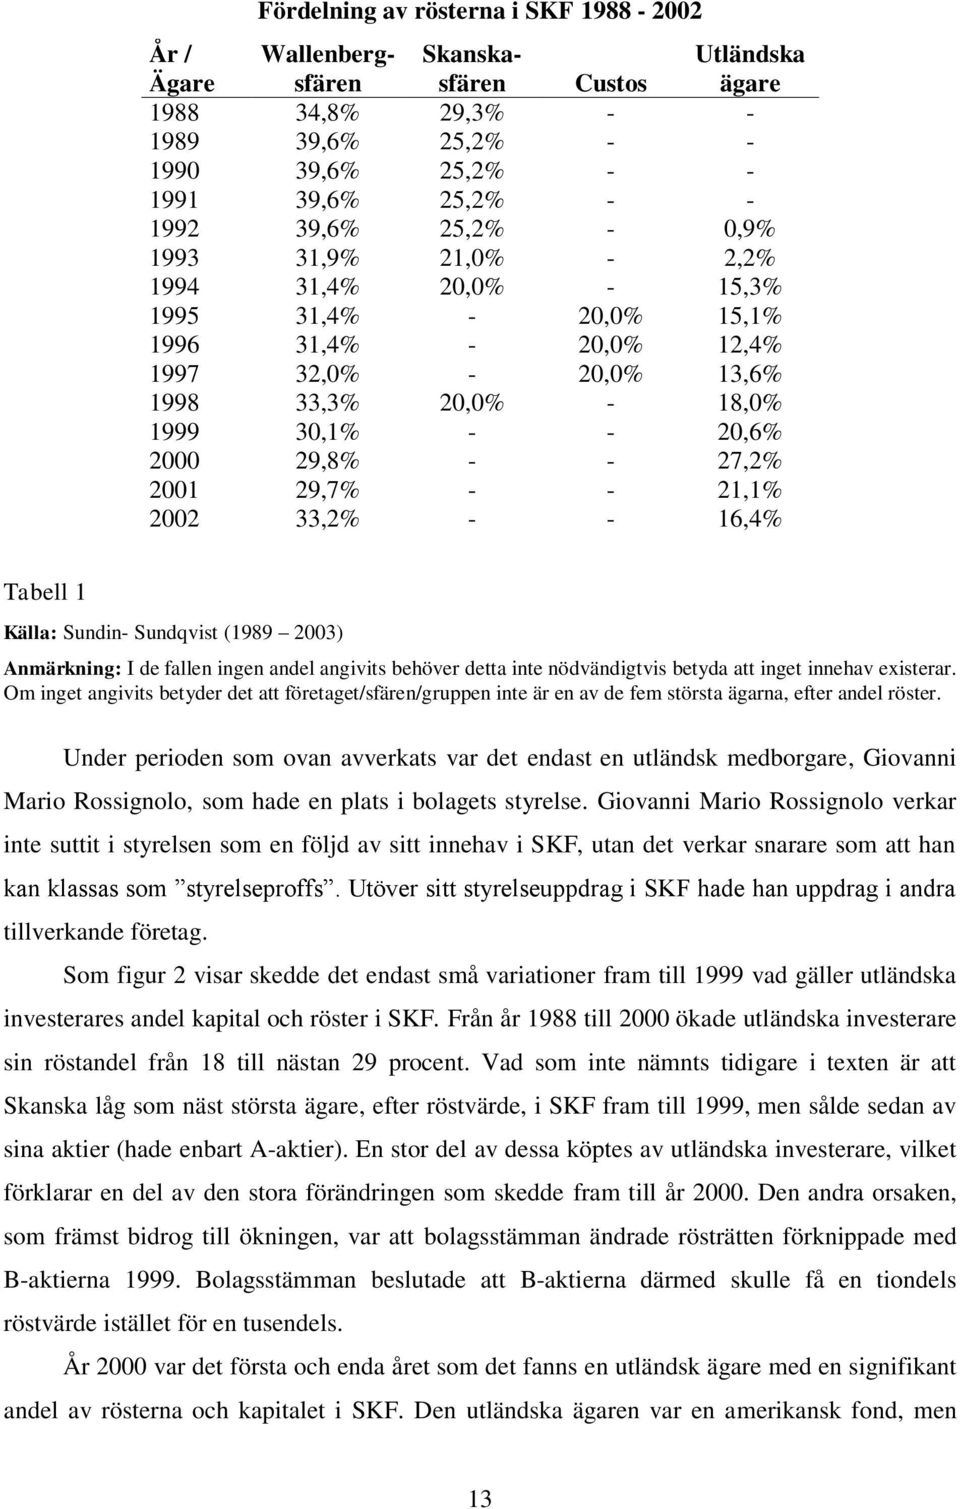 27,2% 2001 29,7% - - 21,1% 2002 33,2% - - 16,4% Tabell 1 Källa: Sundin- Sundqvist (1989 2003) Anmärkning: I de fallen ingen andel angivits behöver detta inte nödvändigtvis betyda att inget innehav